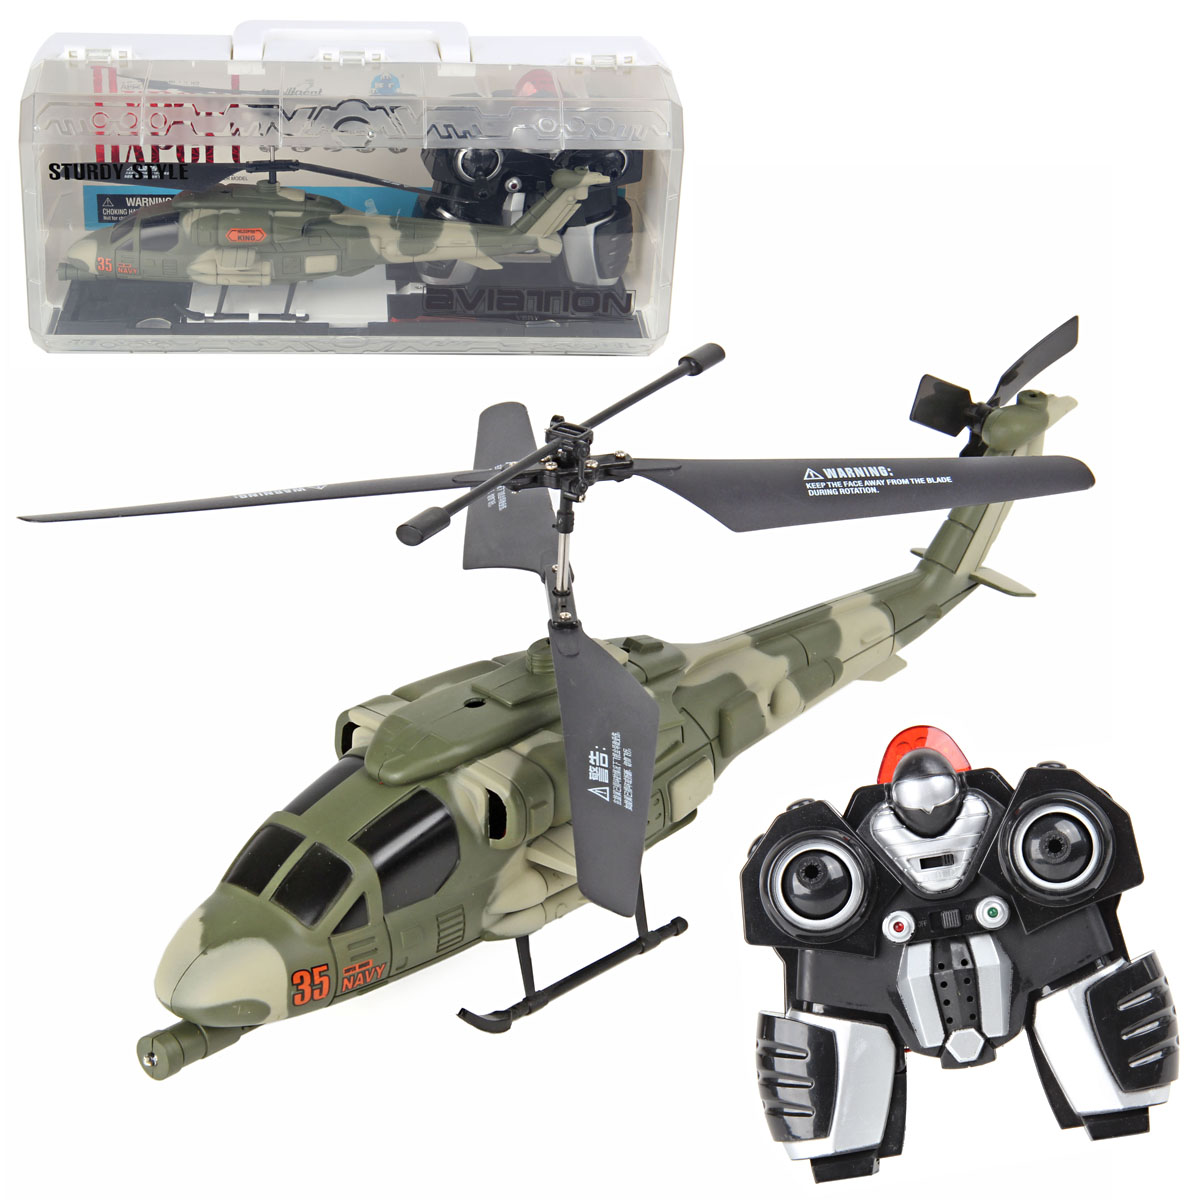 Вертолет купить игрушка. Вертолёт ми8 на радиоуправлении. Alloy Series Mera вертолет радиоуправляемый... (022804). Вертолет veld co 58986 на радиоуправлении. Gw001877 вертолёт радиоуправляемый.